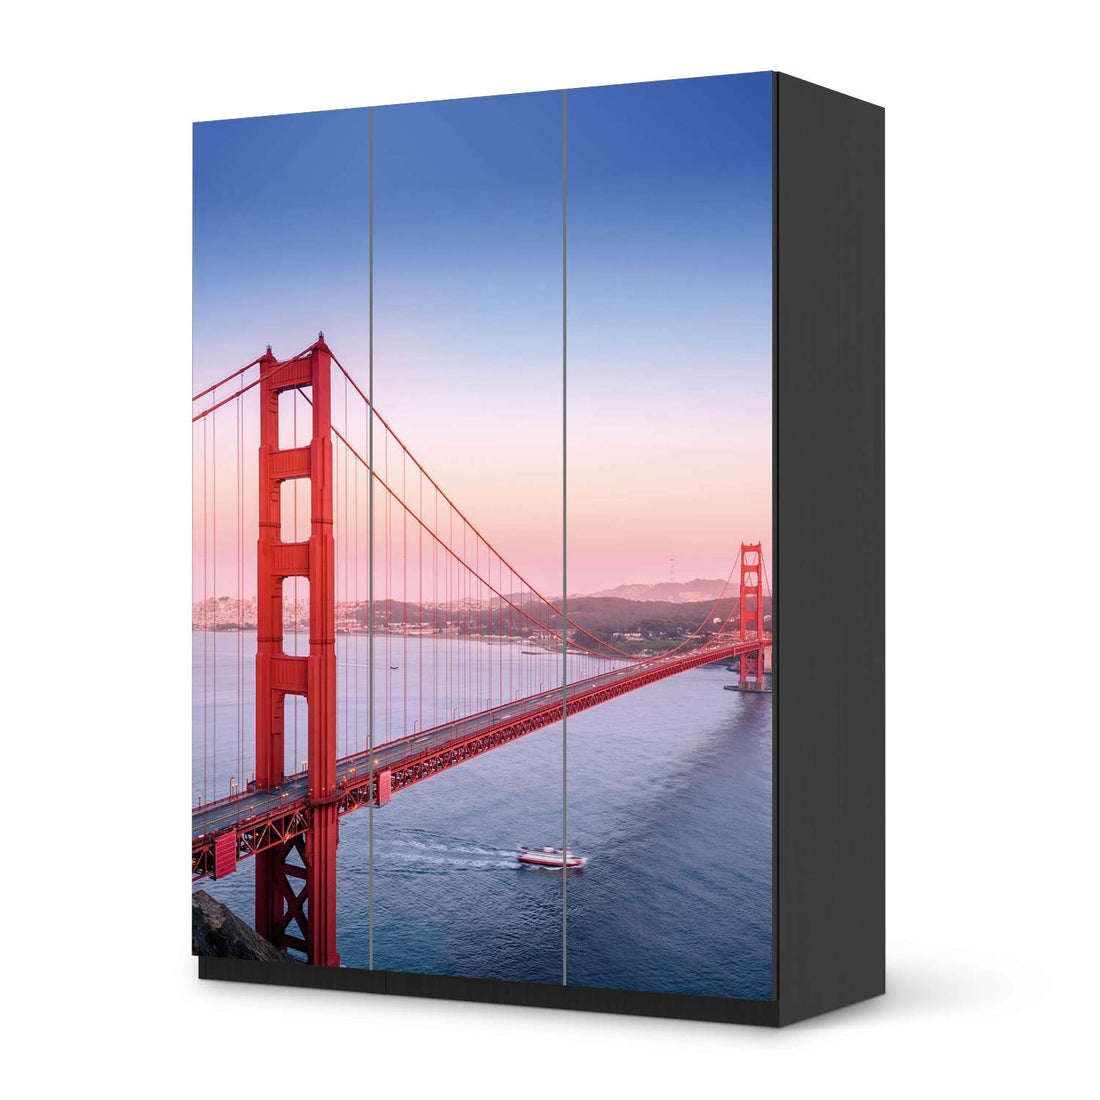 Folie für Möbel Golden Gate - IKEA Pax Schrank 201 cm Höhe - 3 Türen - schwarz